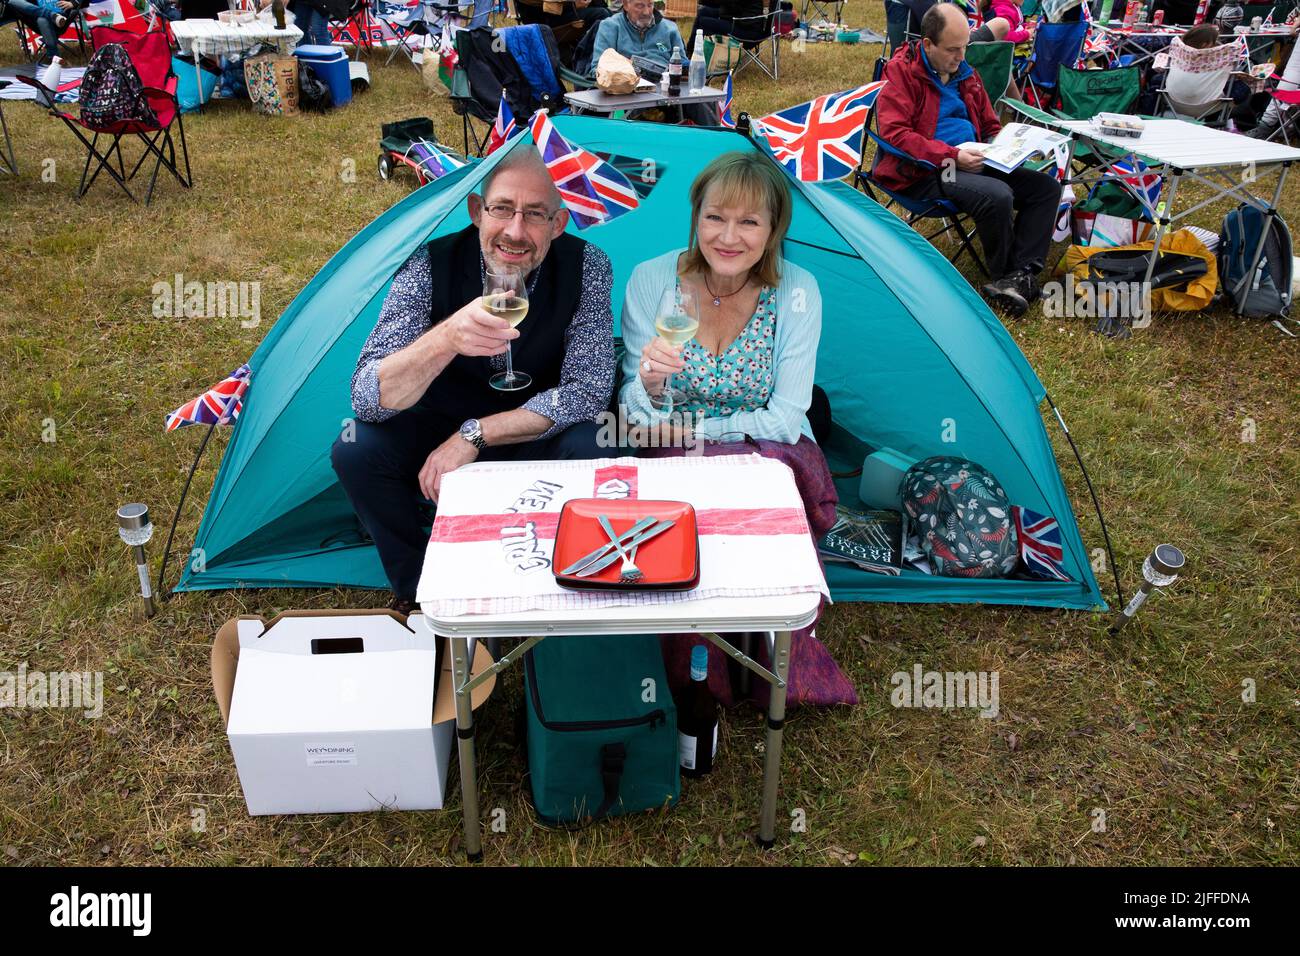 Woodstock, Oxfordshire, Großbritannien. 2.. Juli 2022. Paar in einem winzigen Zelt mit Union Jack und Red Ensign bei einem Drink. Battle Prom Picknick-Konzerte. Blenheim Palace. Vereinigtes Königreich. Quelle: Alexander Caminada/Alamy Live News Stockfoto